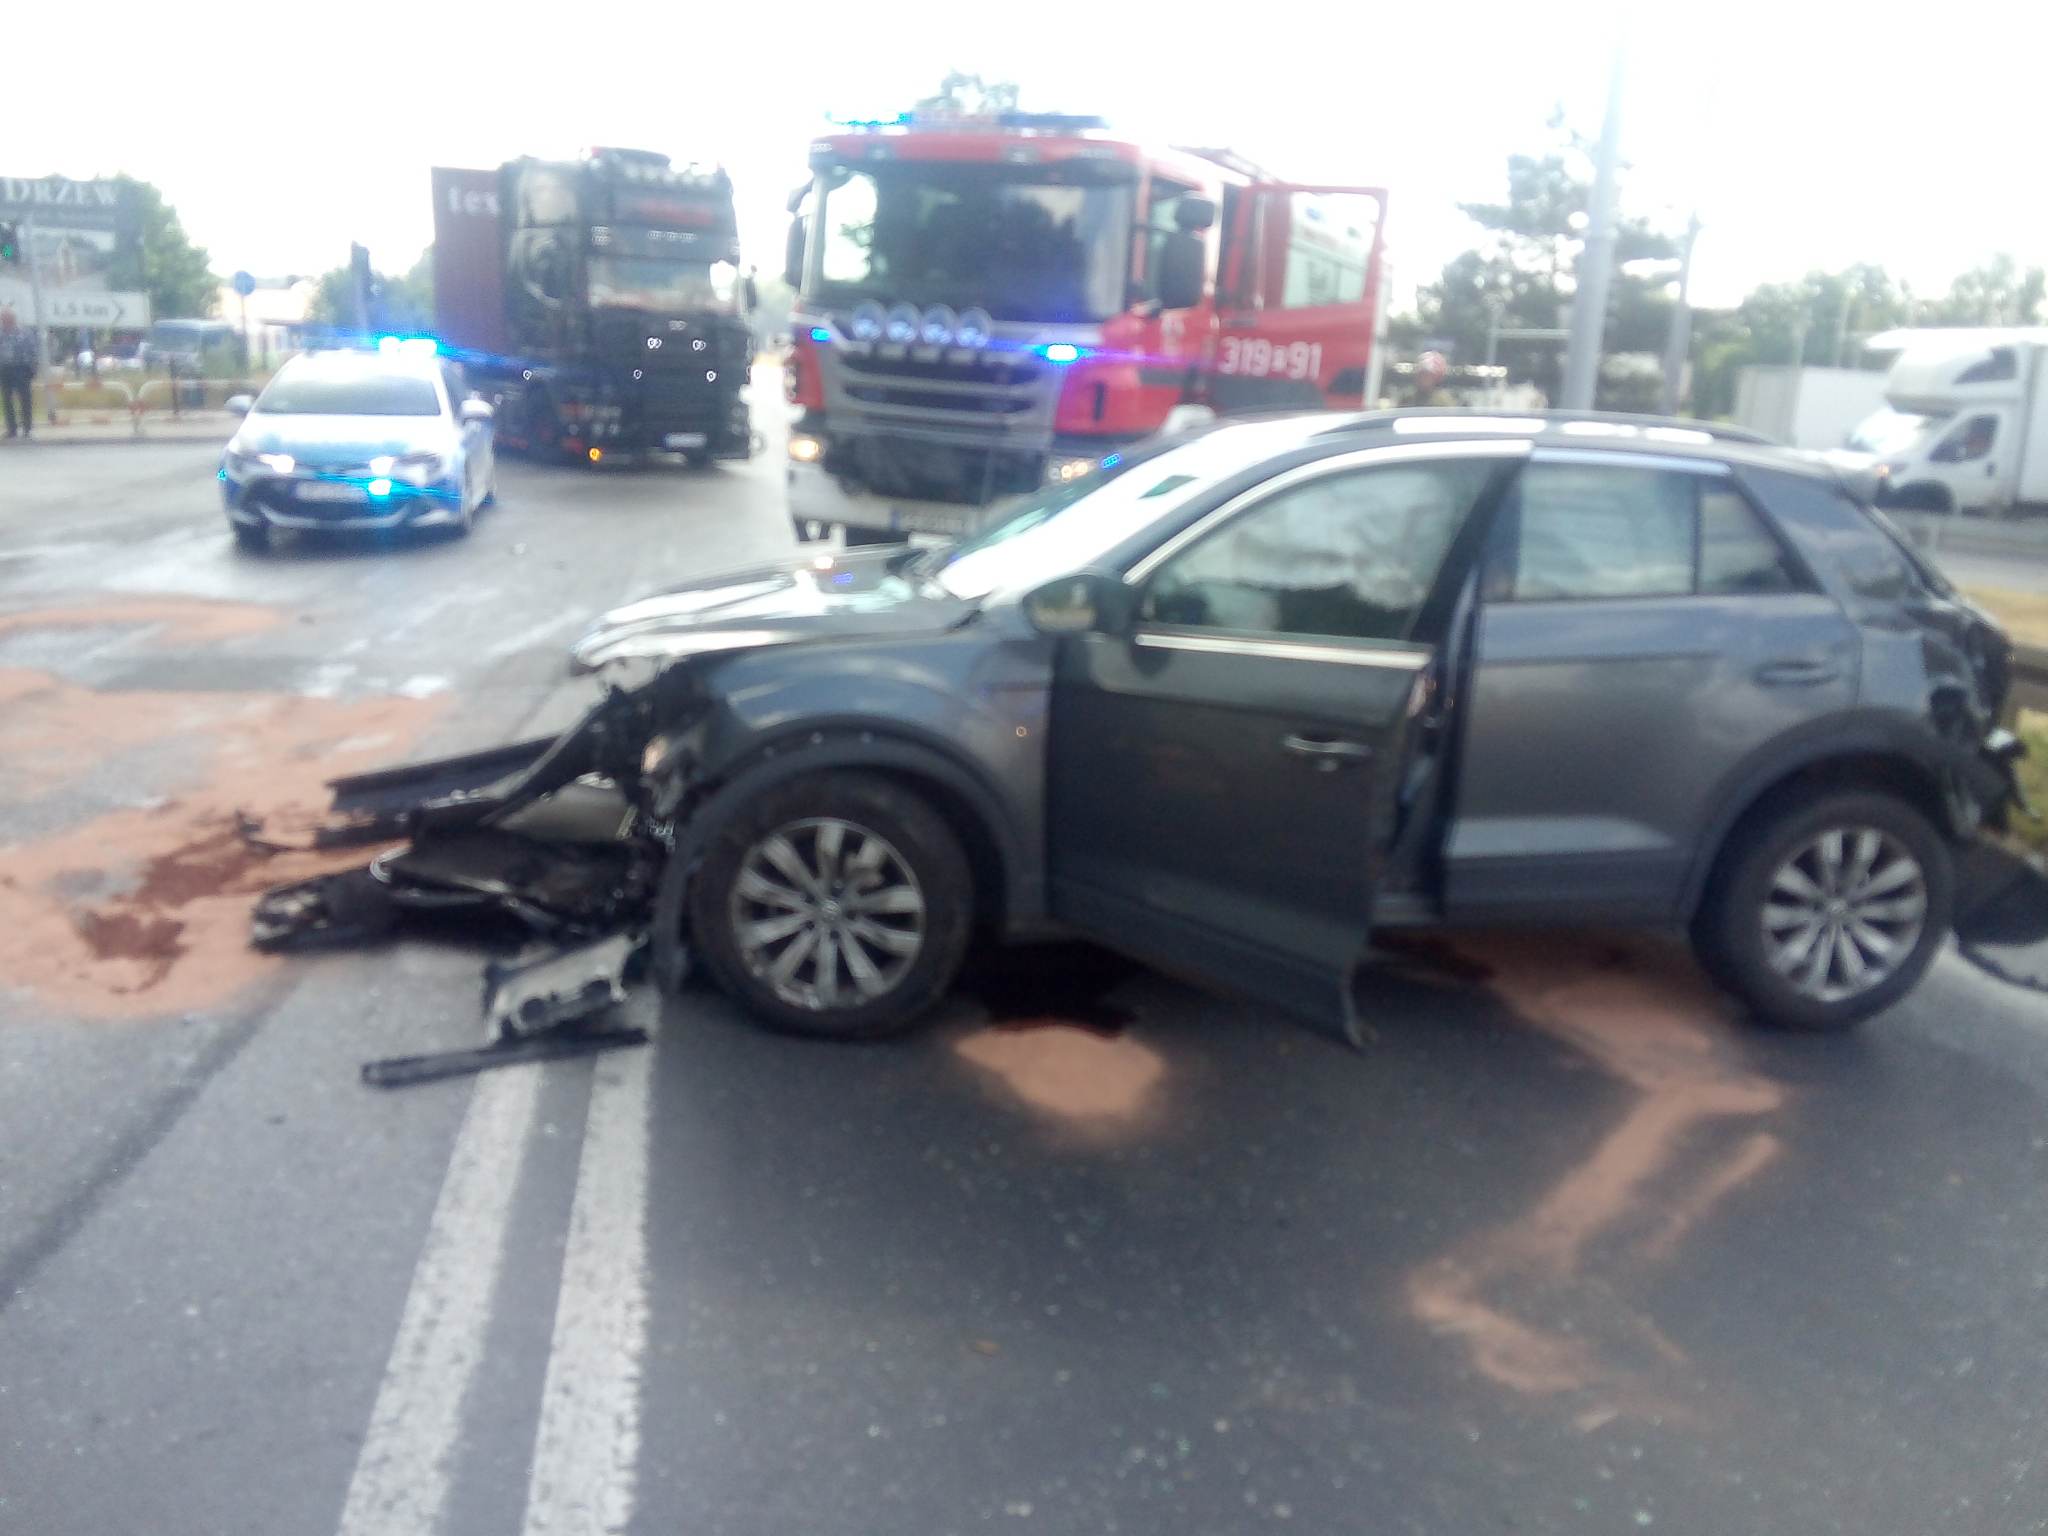 Wypadek na trasie Poznań-Gniezno, droga zablokowana